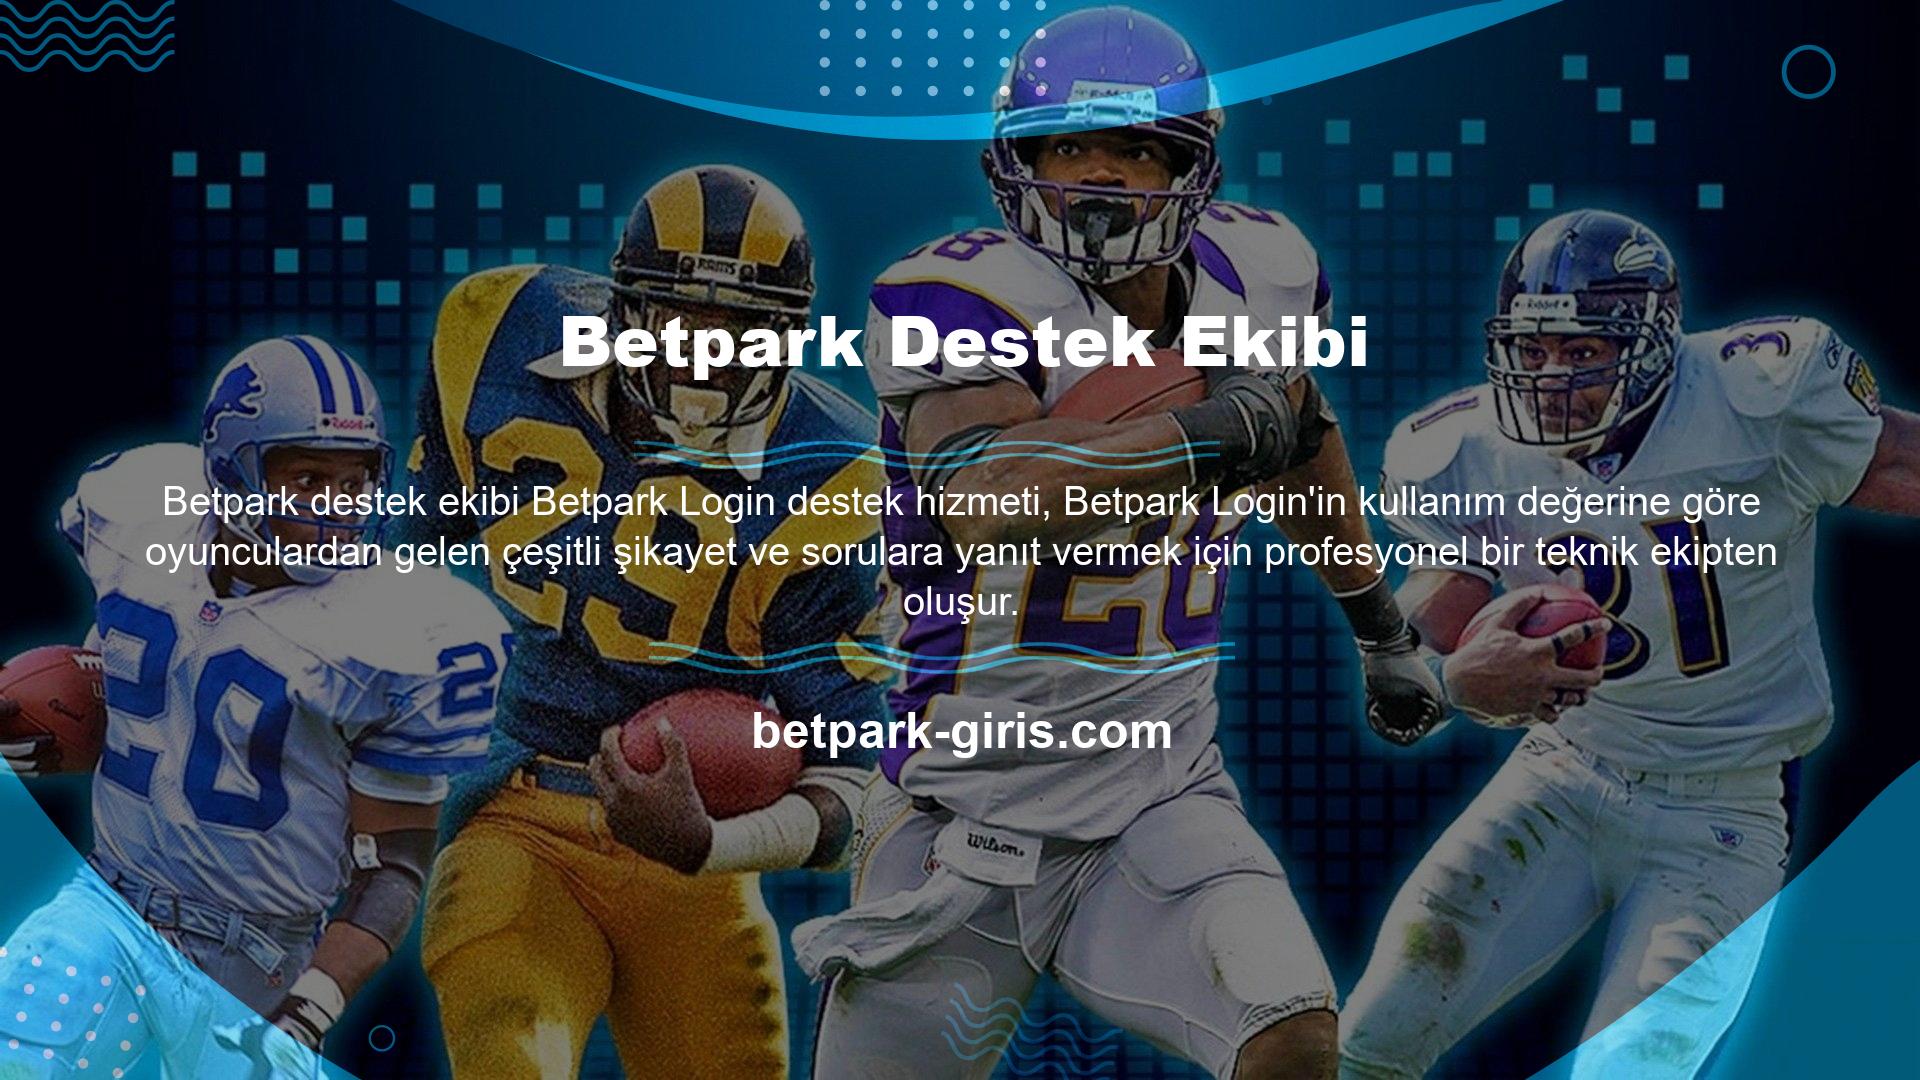 Betpark, A Sınıfı hizmet vermek için geliştirdiği kullanıcı deneyiminden tüm oyuncuların şikayet etmeden faydalanmasını sağlar